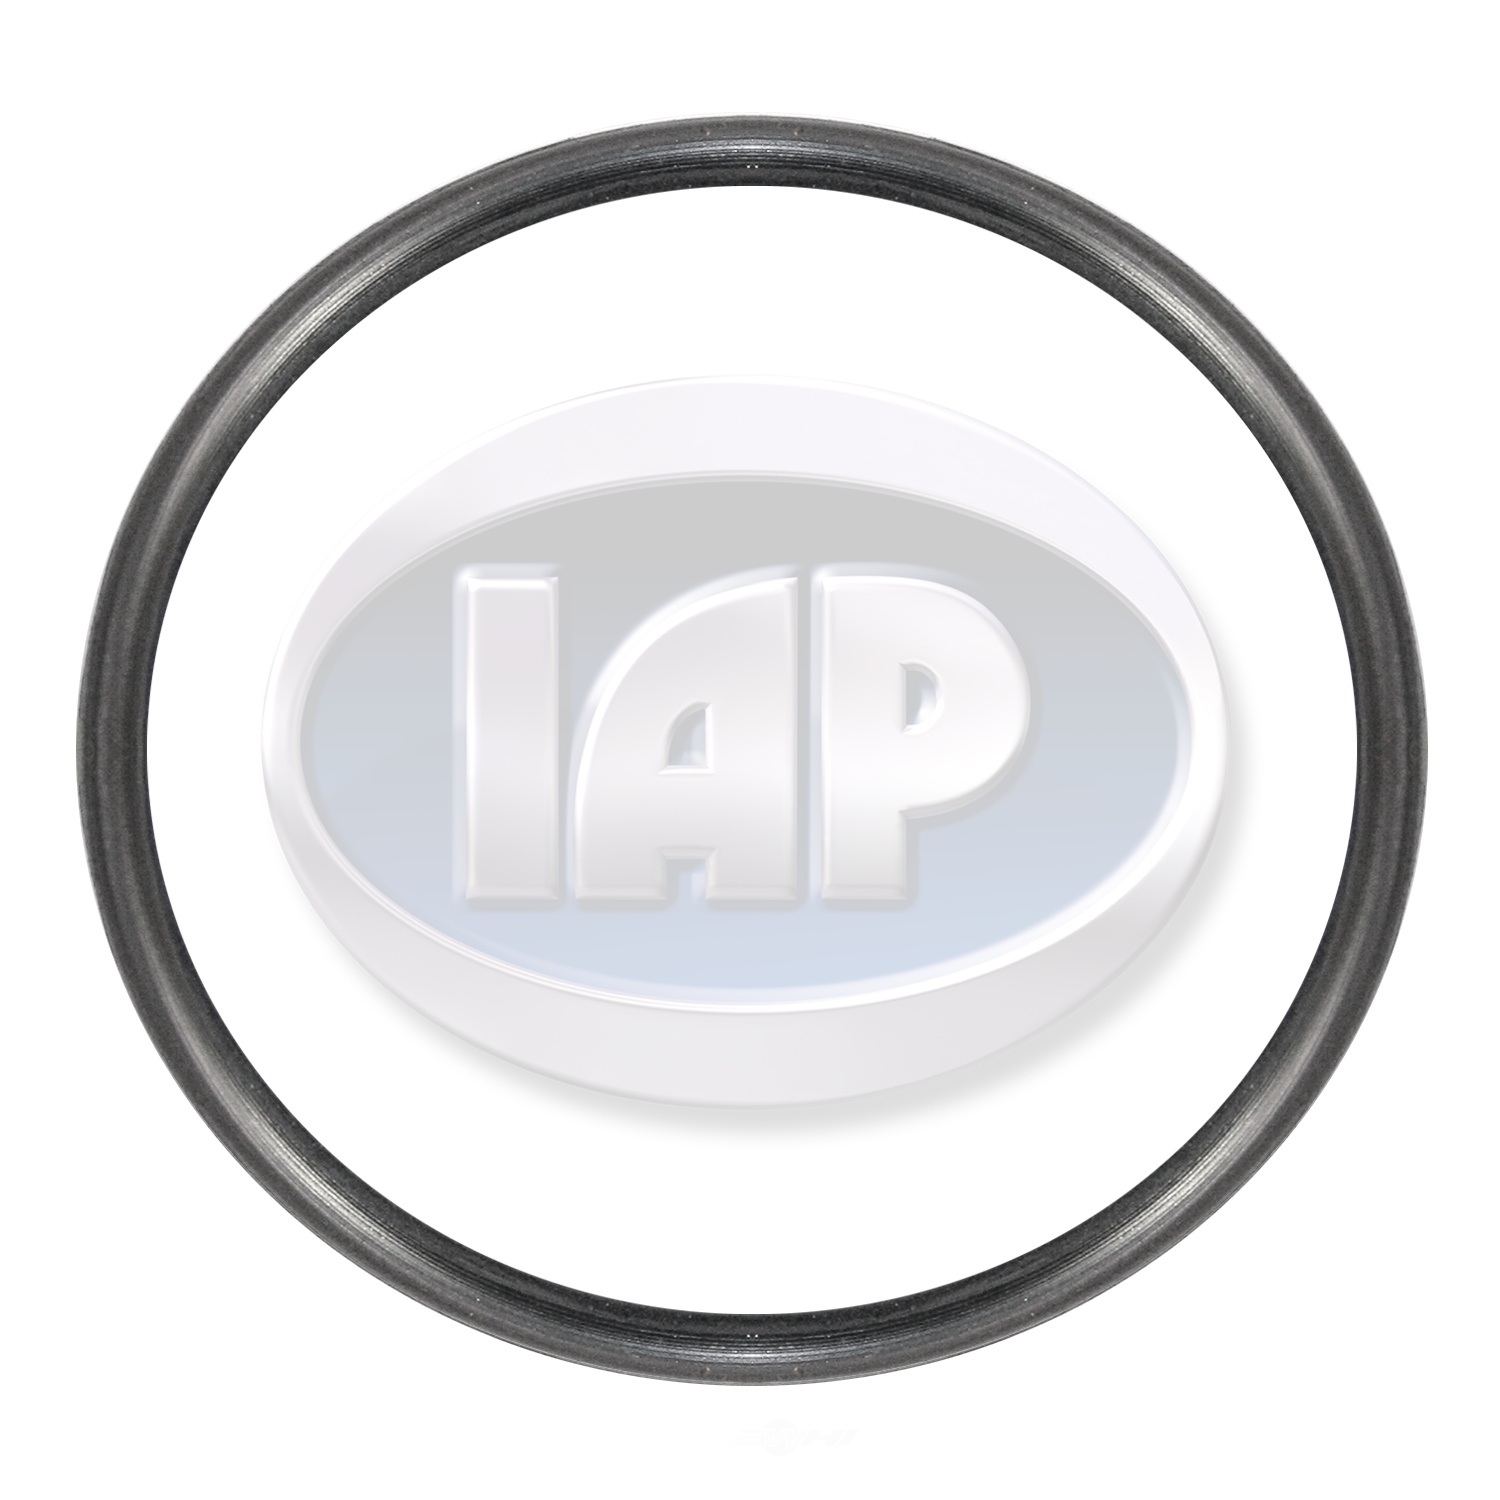 IAP/KUHLTEK MOTORWERKS - Clutch Flywheel O-Ring - KMS 311105295A